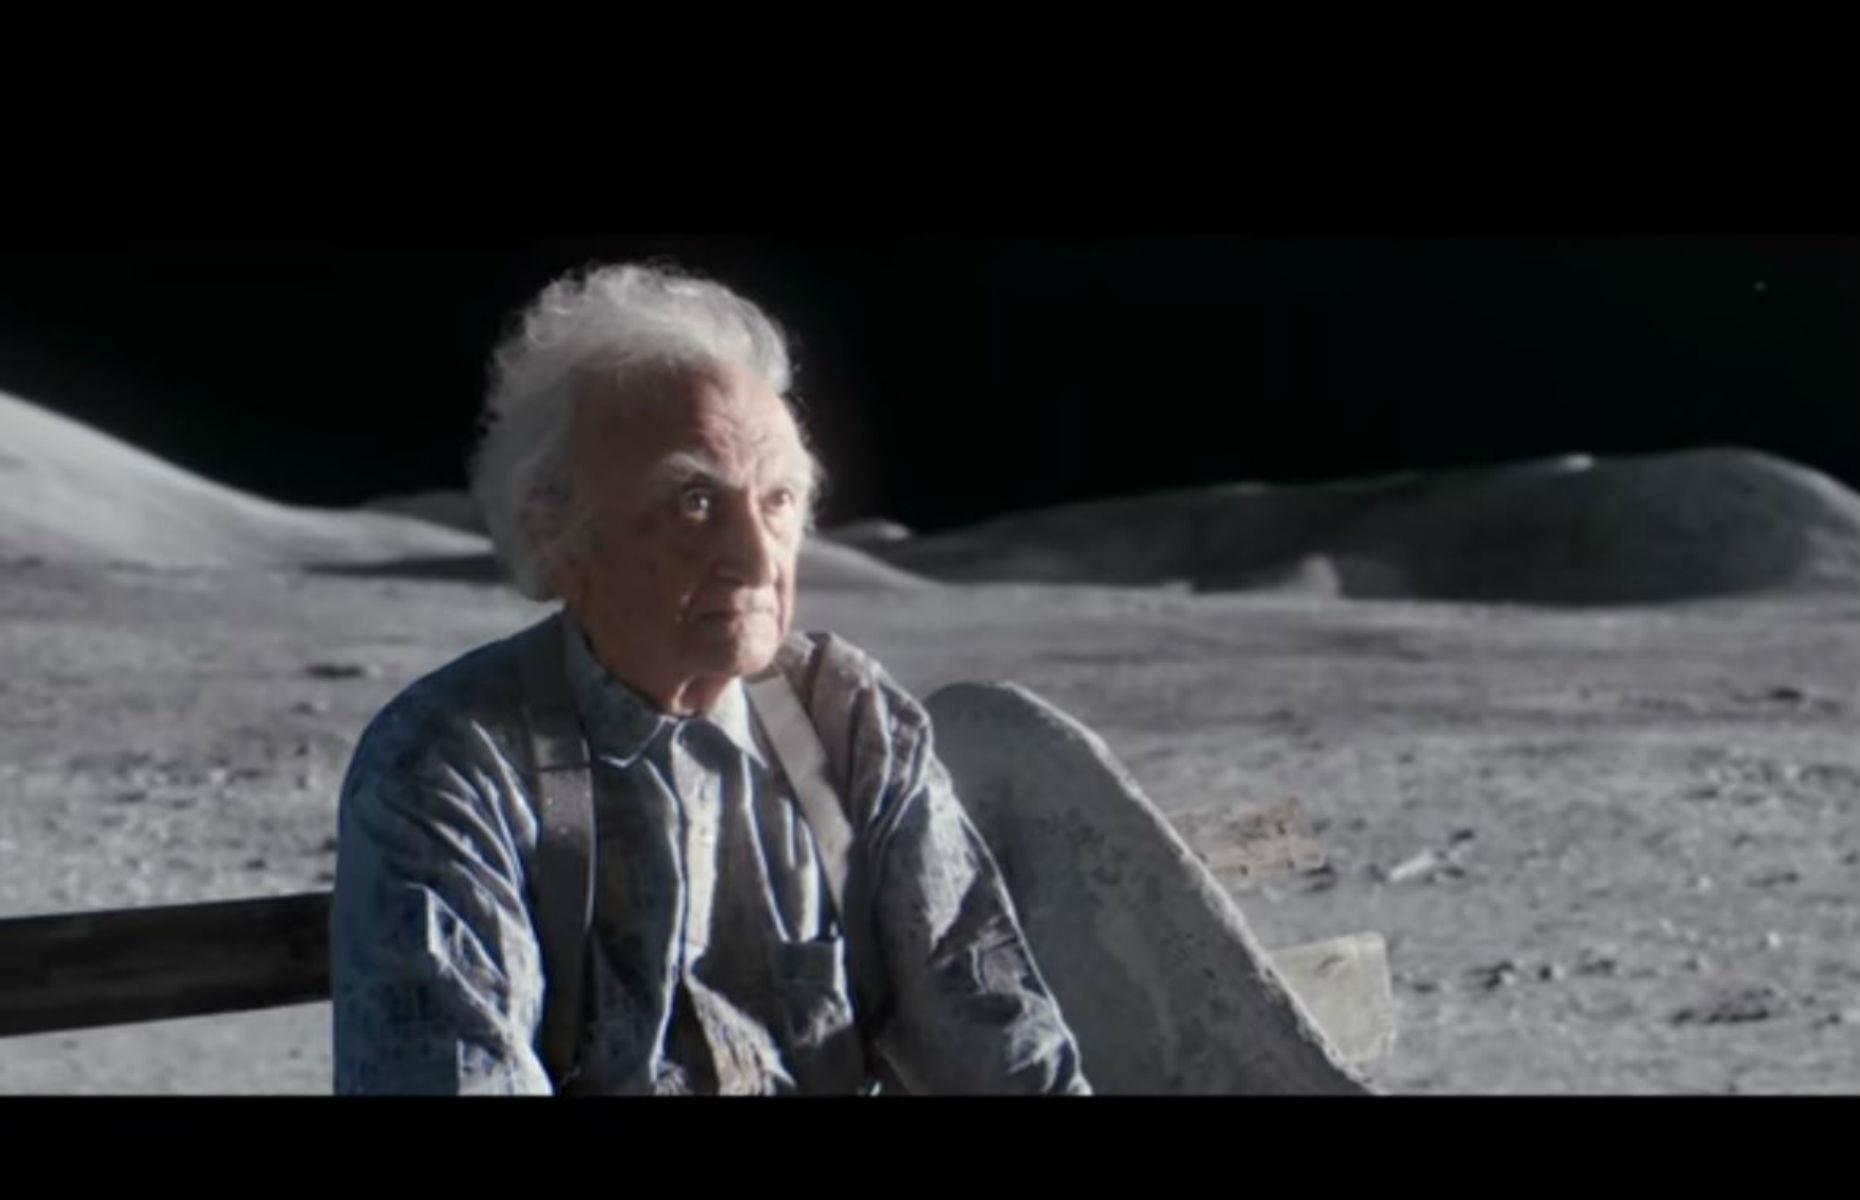 2. John Lewis 2015: Man on the Moon 